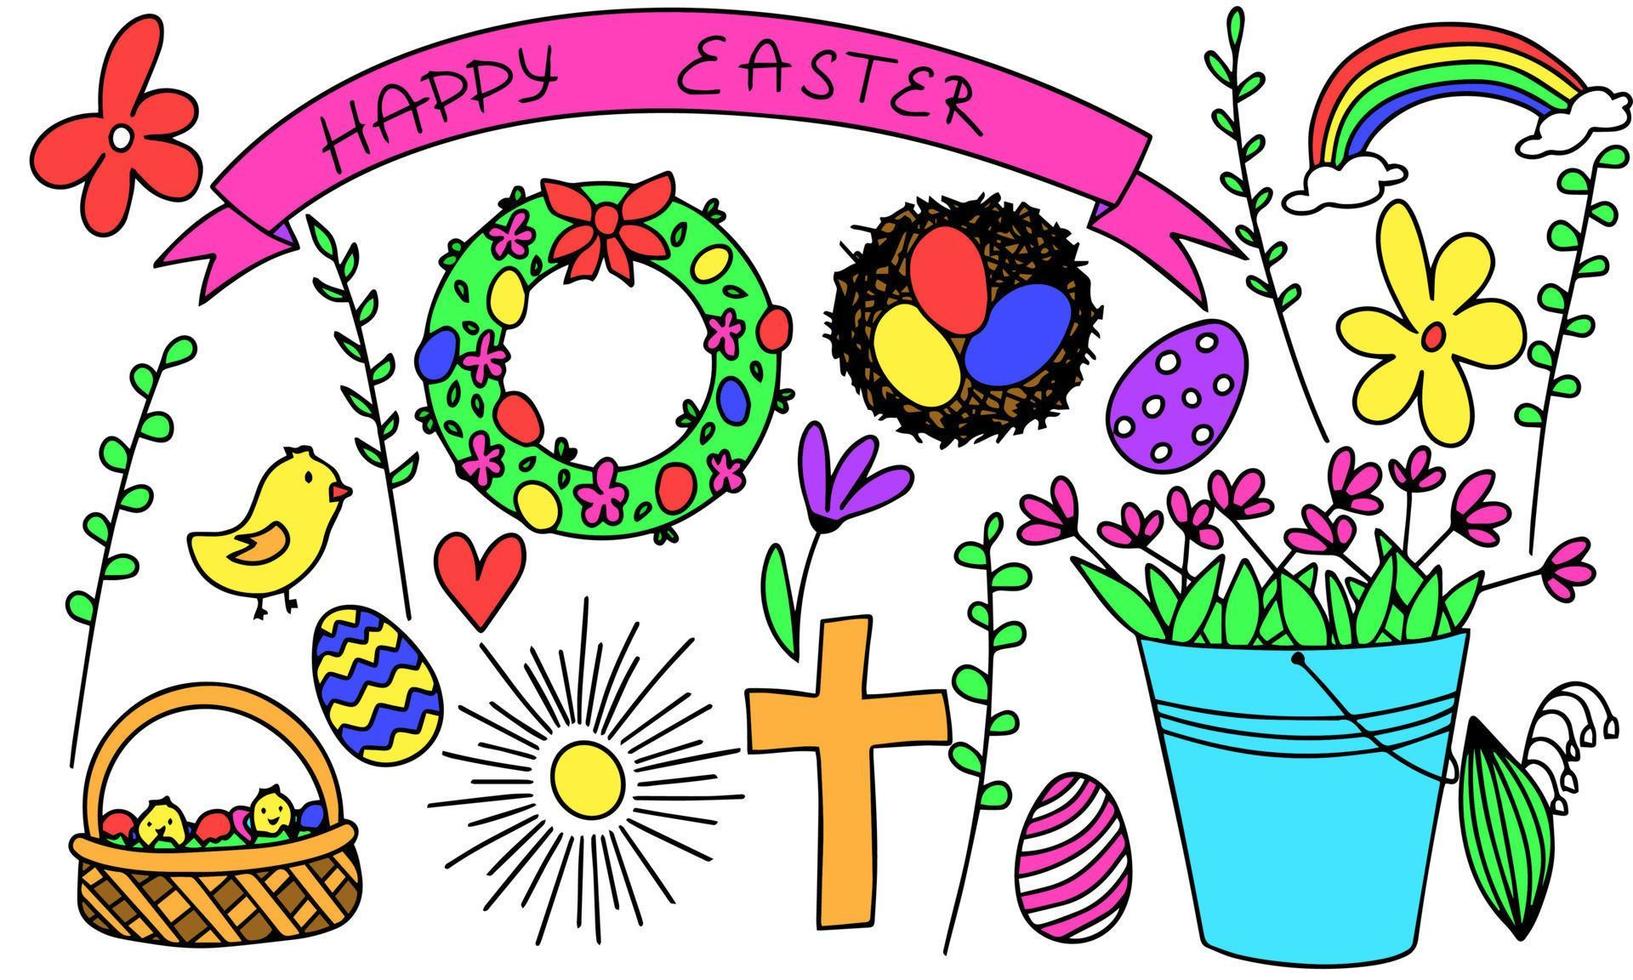 garabatear símbolo de Pascua de Resurrección. huevos, flores, contento Pascua de Resurrección, arcoíris, polluelo, Dom. vector ilustración.